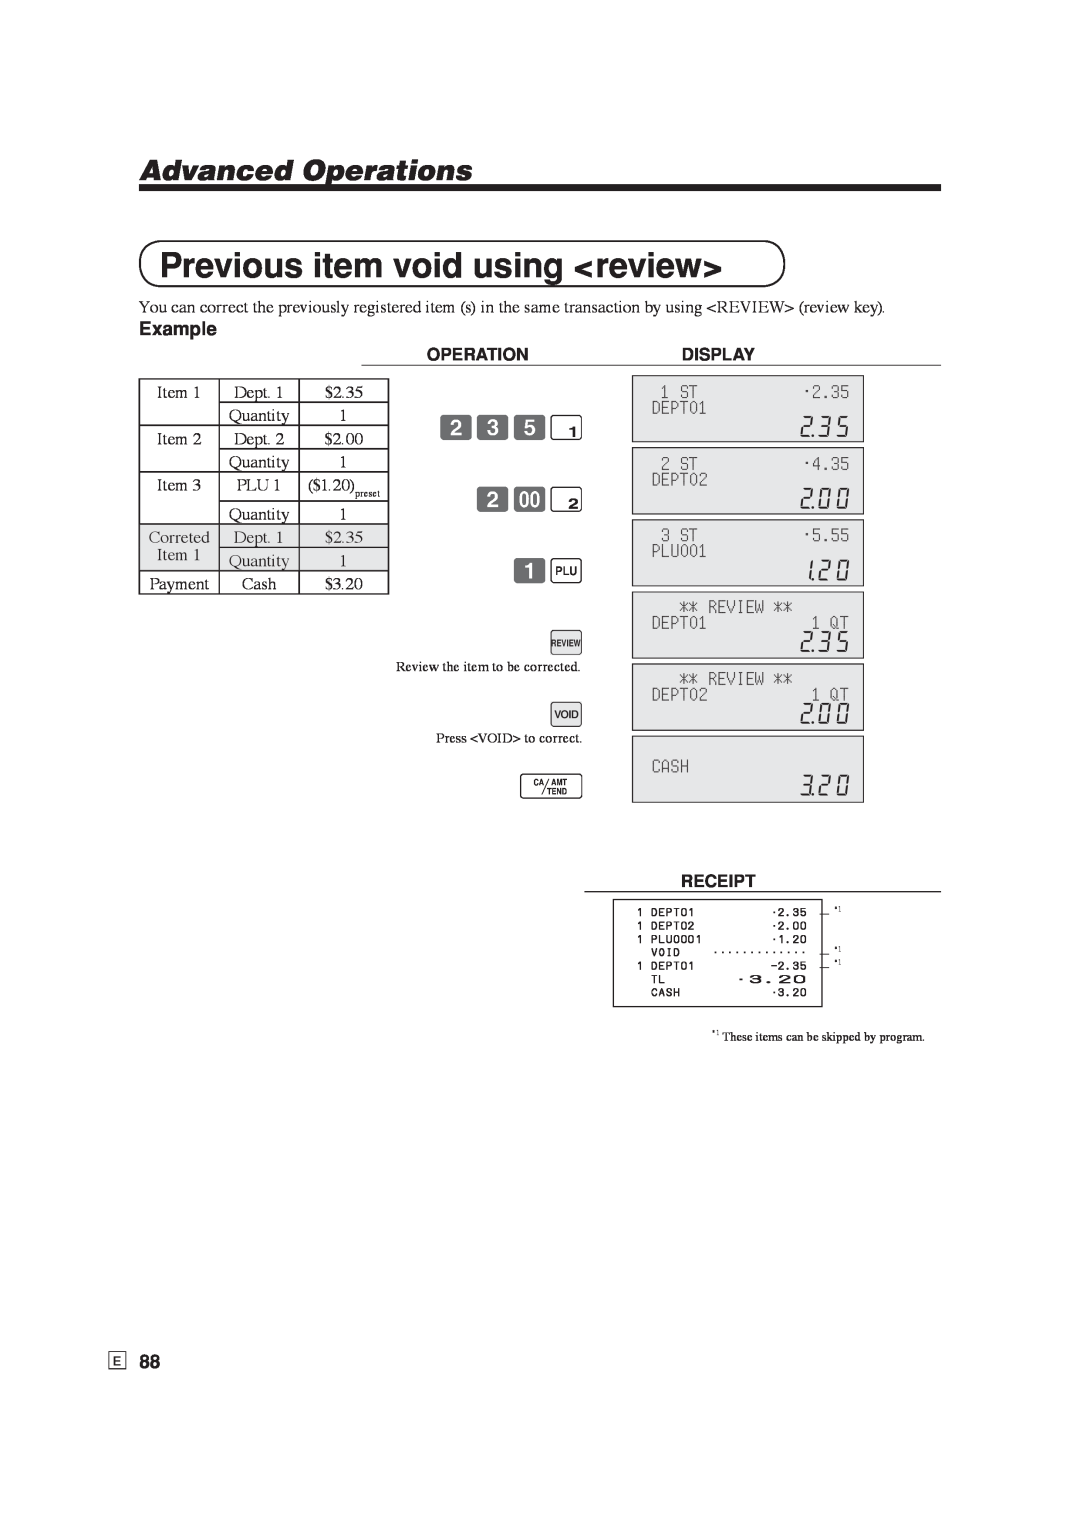 Casio SE-S6000 Previous item void using review, 2.35, DEPT01, 4.35, DEPT02, 5.55, PLU001, Review, 1 QT, Cash, Example 